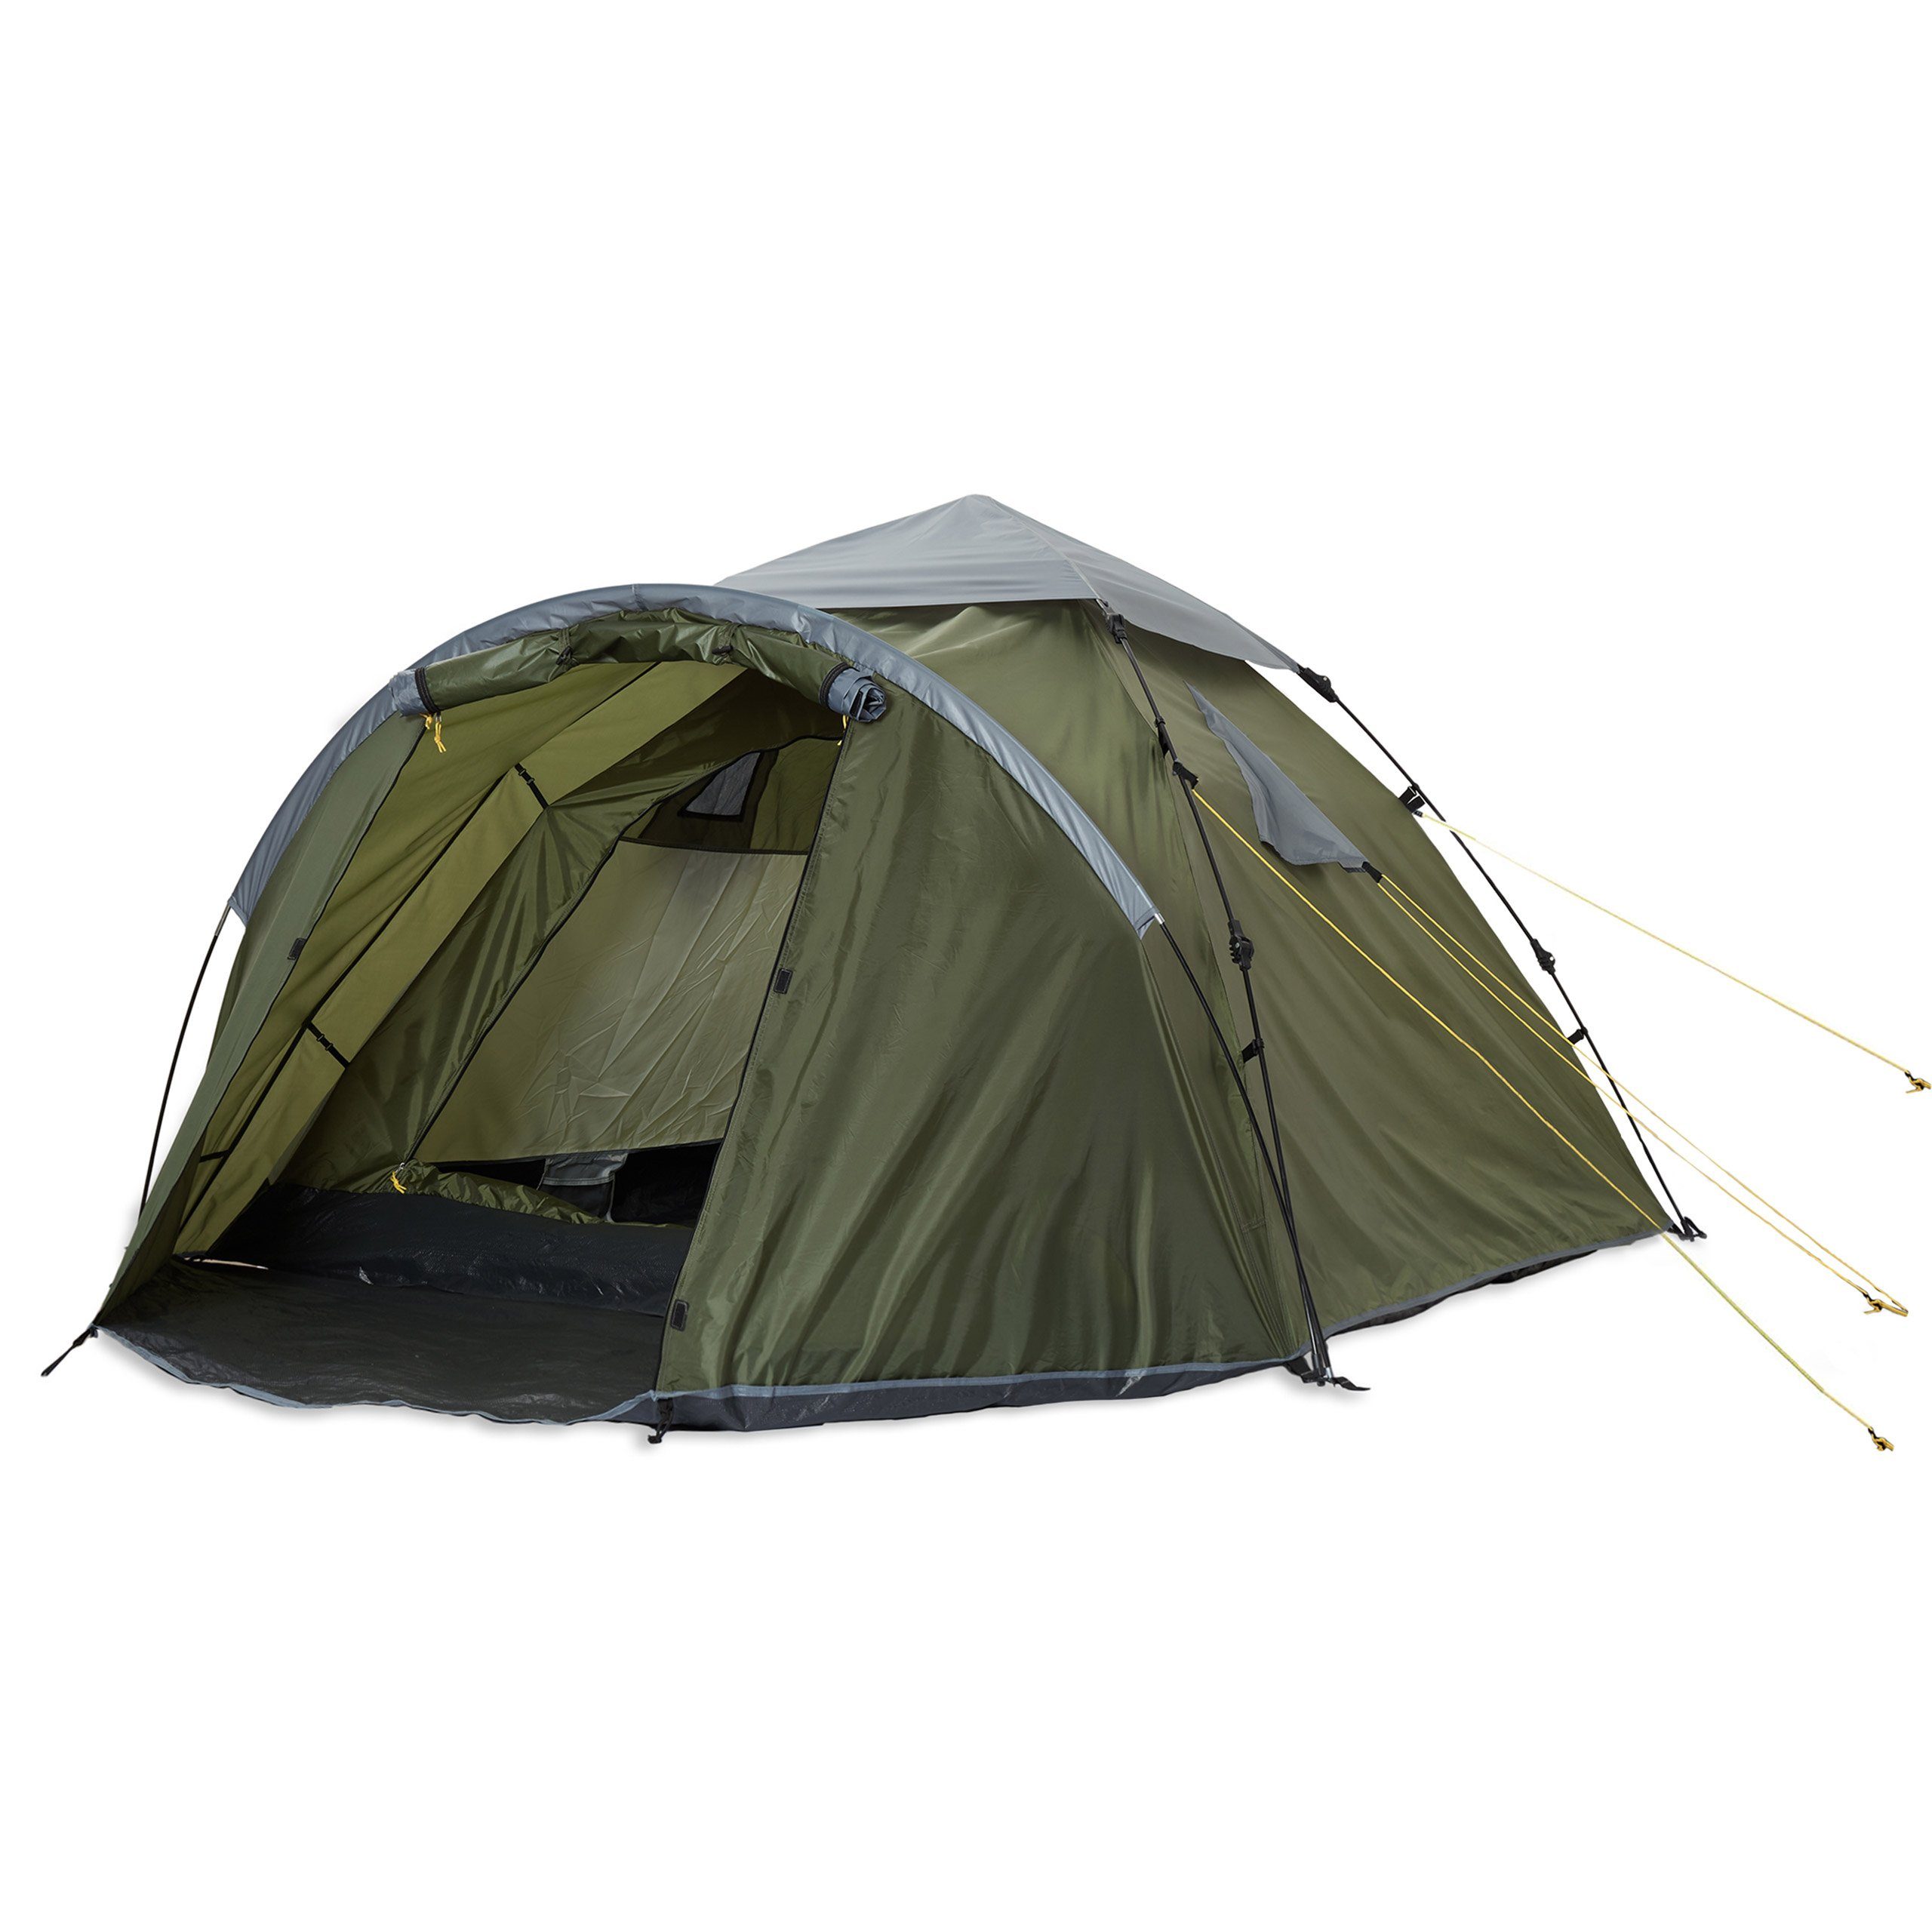 Camping Festival Tunnelzelt 3 Personen Outdoor Zelt 